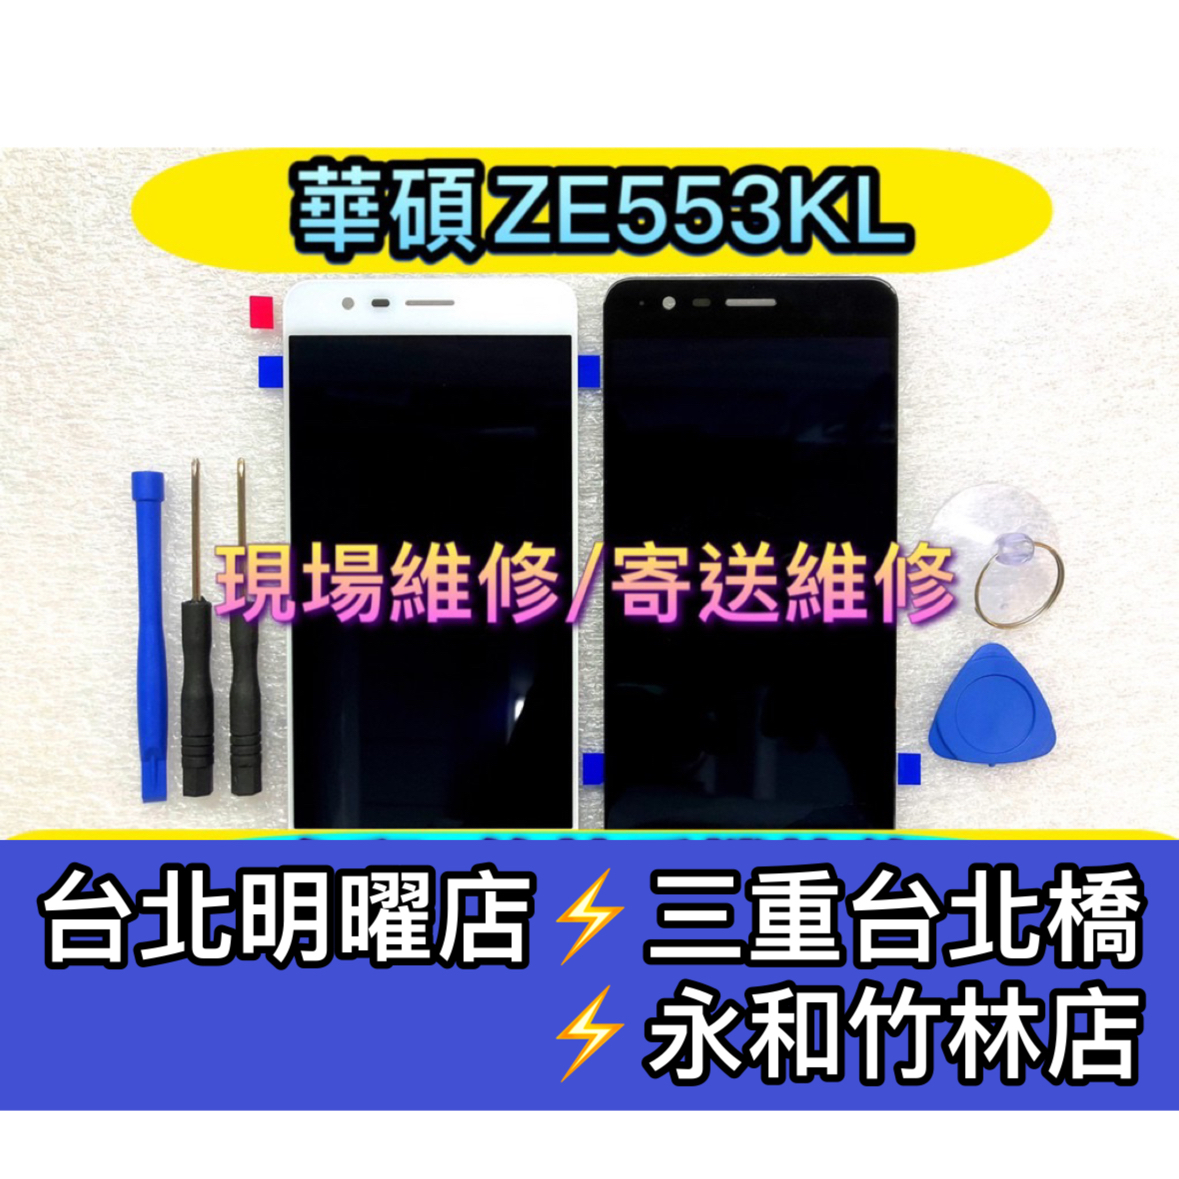 ASUS 華碩 Zenfone3 ZE553KL Z01HDA 螢幕總成 換螢幕 螢幕維修更換